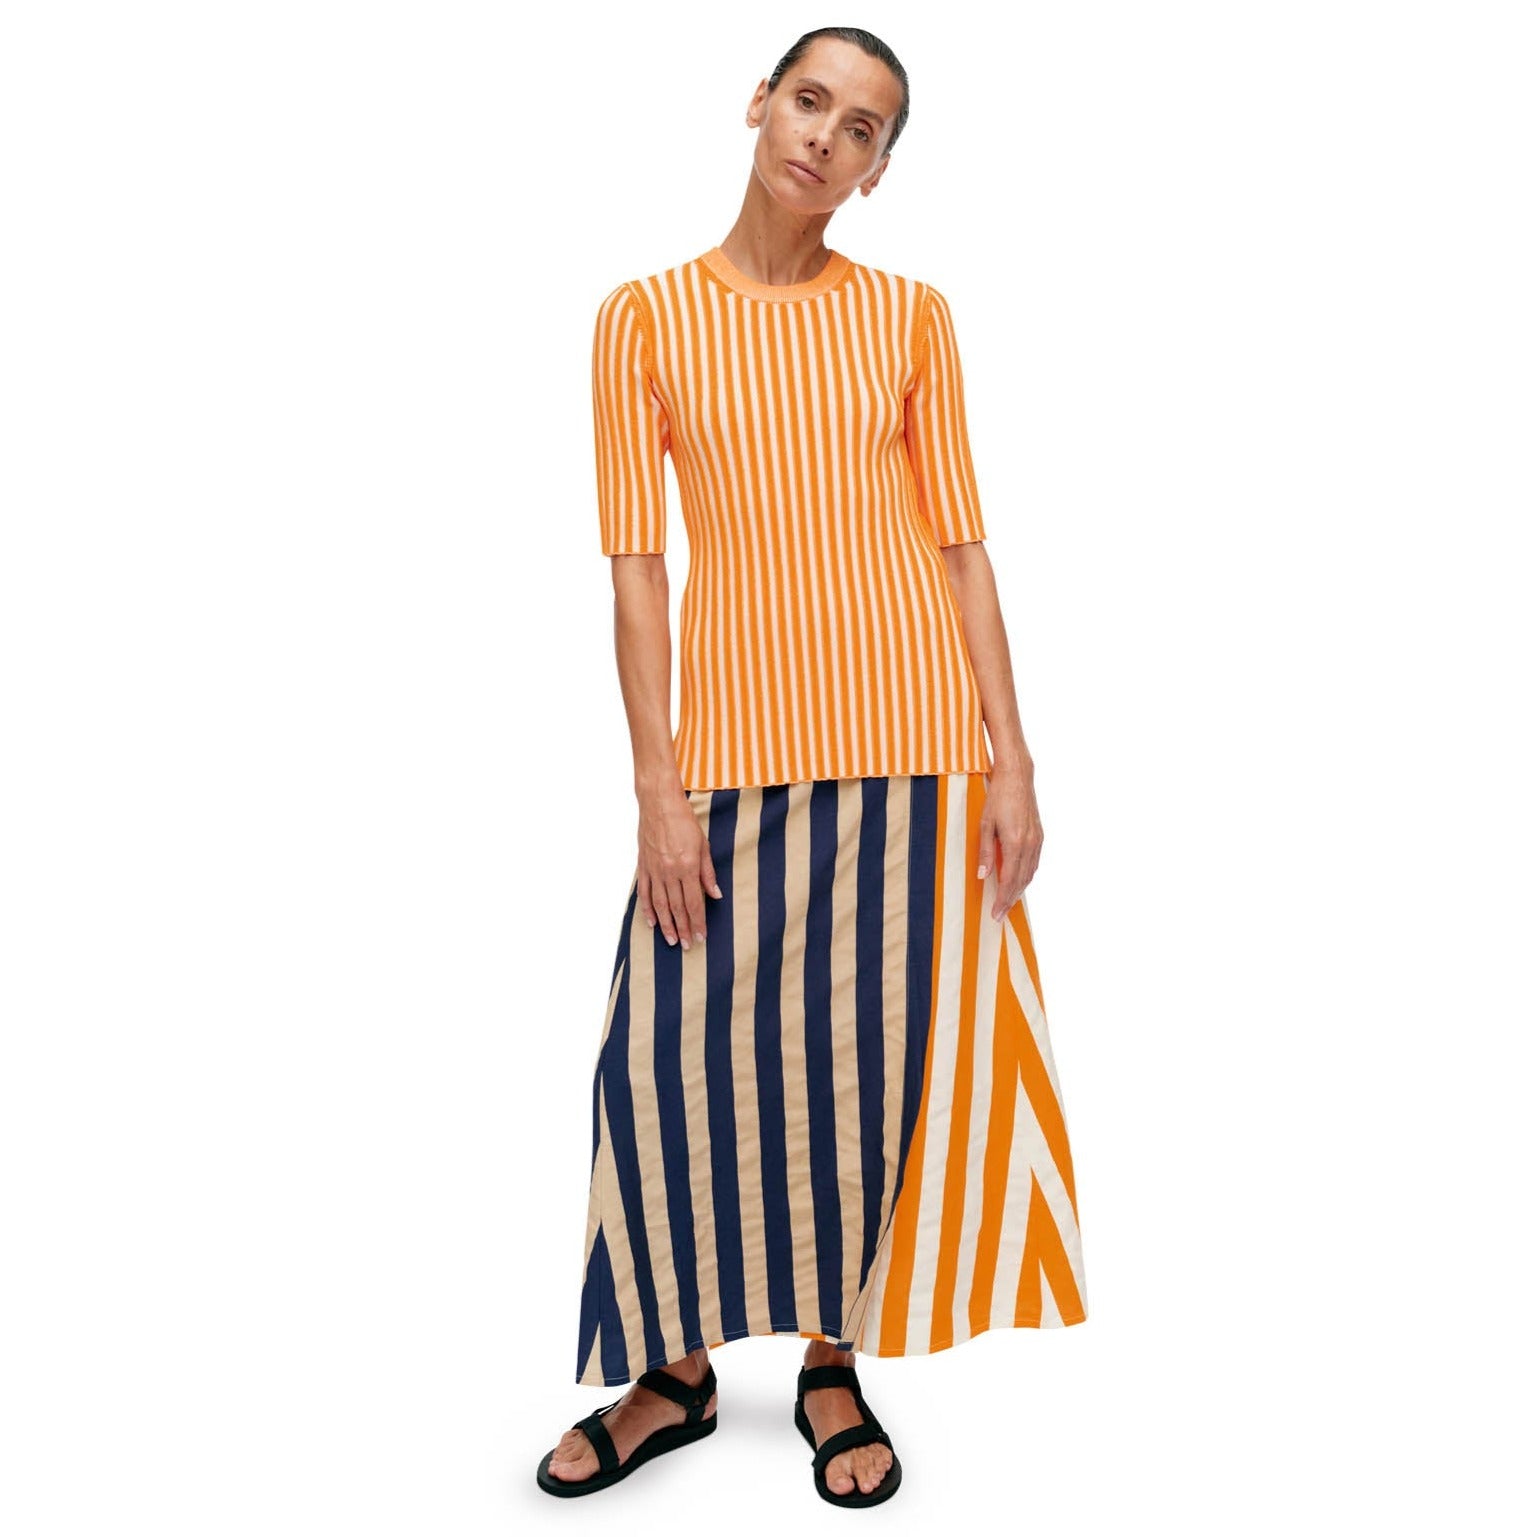 Marimekko Kahlaus Merirosvo Striped Wrap Skirt, Orange, Beige, White & Dark Blue